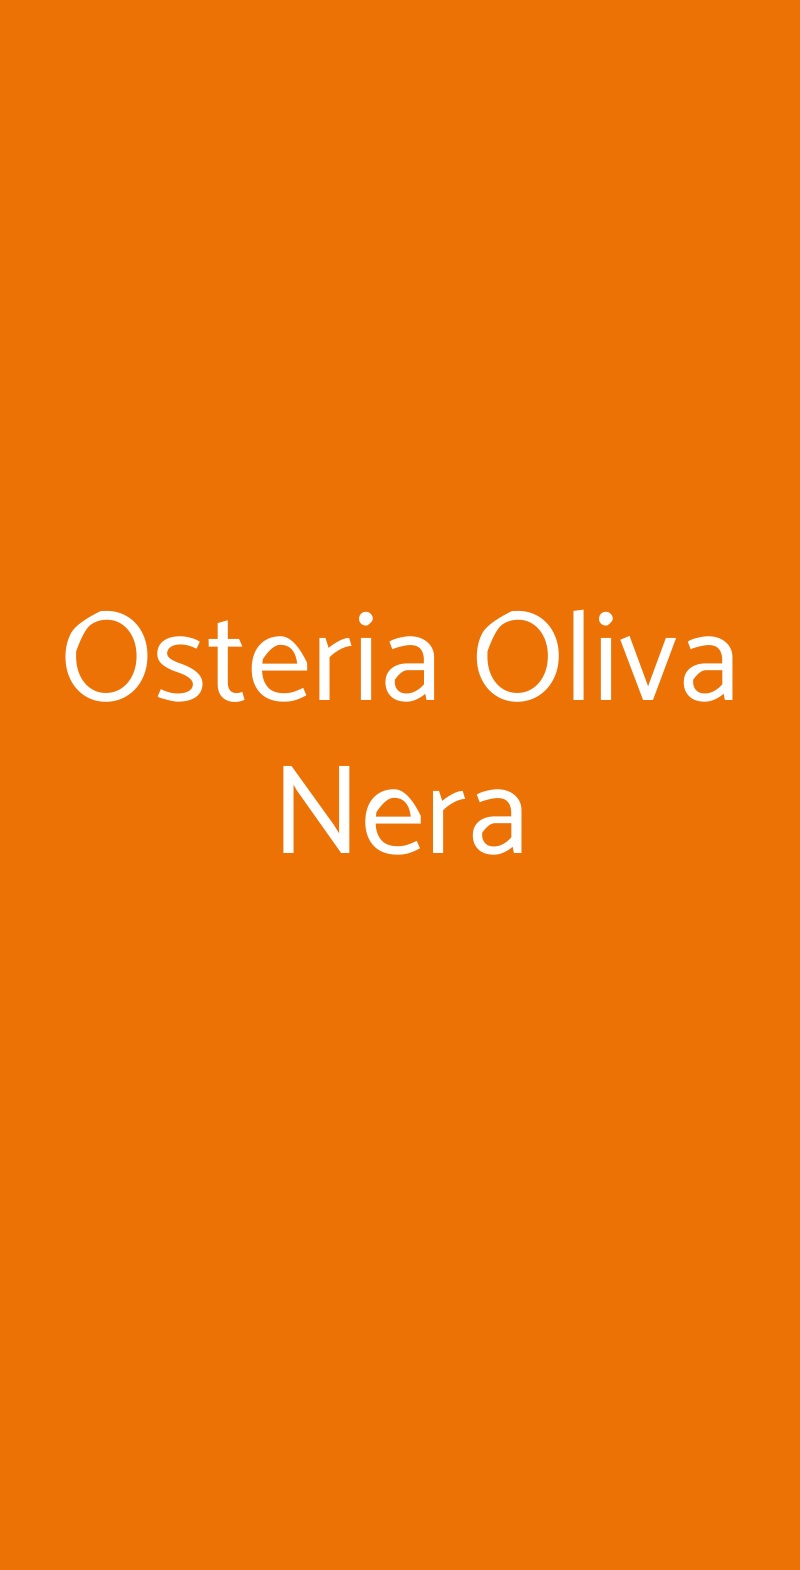 Osteria Oliva Nera Venezia menù 1 pagina